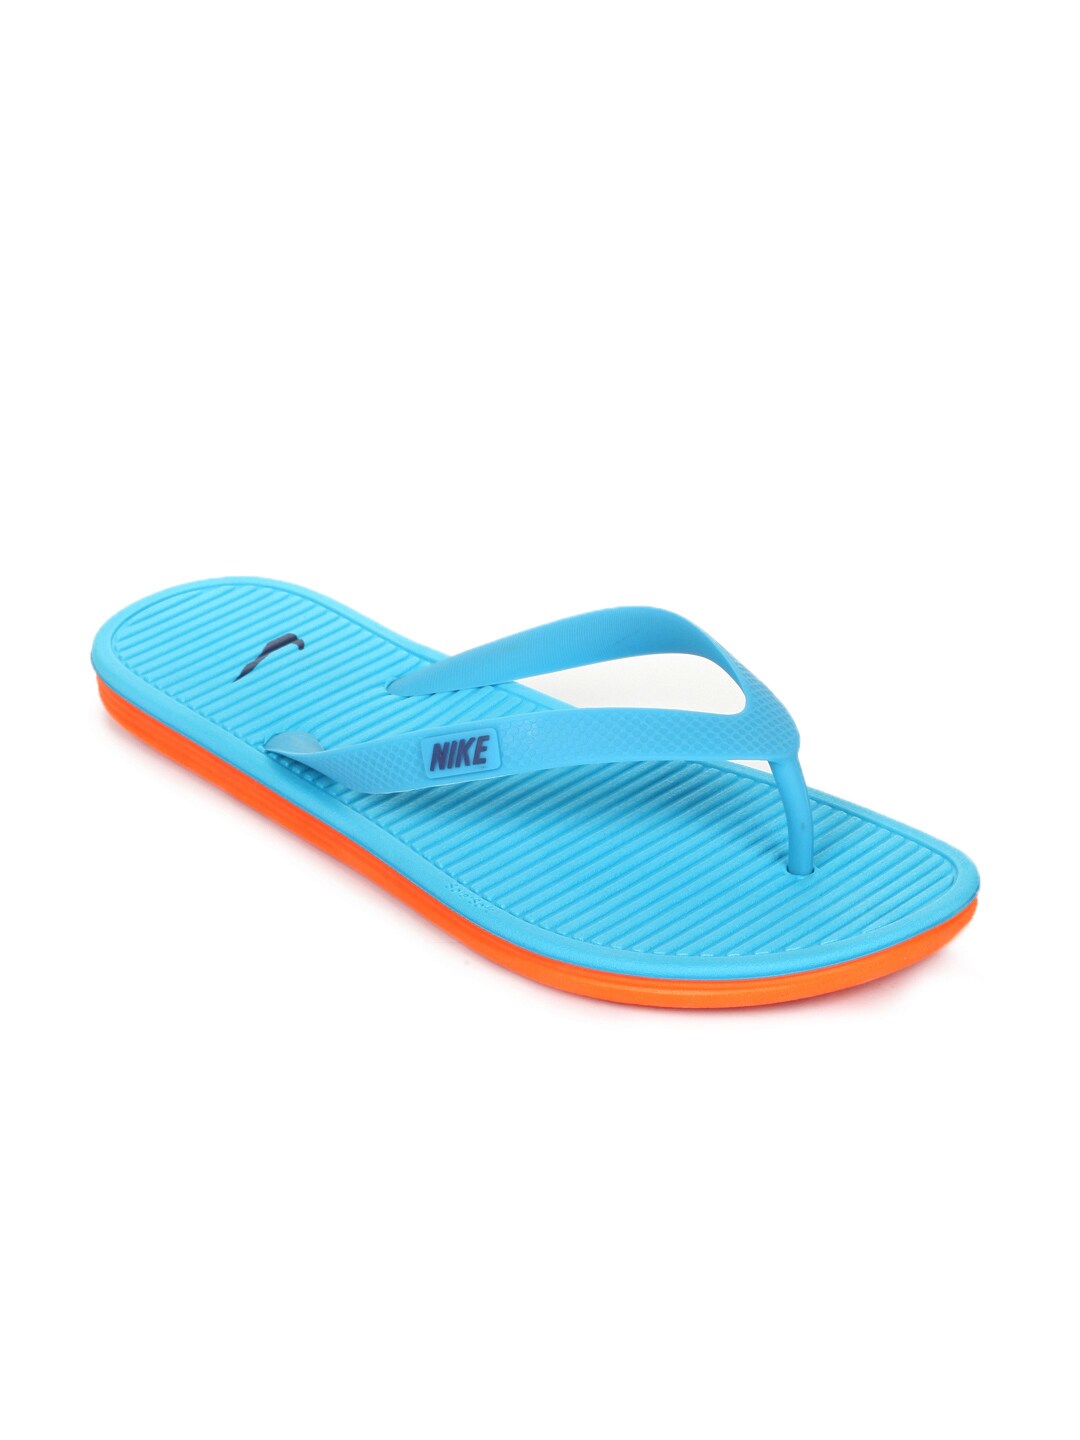 Nike Men Solarsoft Thong Blue Flip Flops